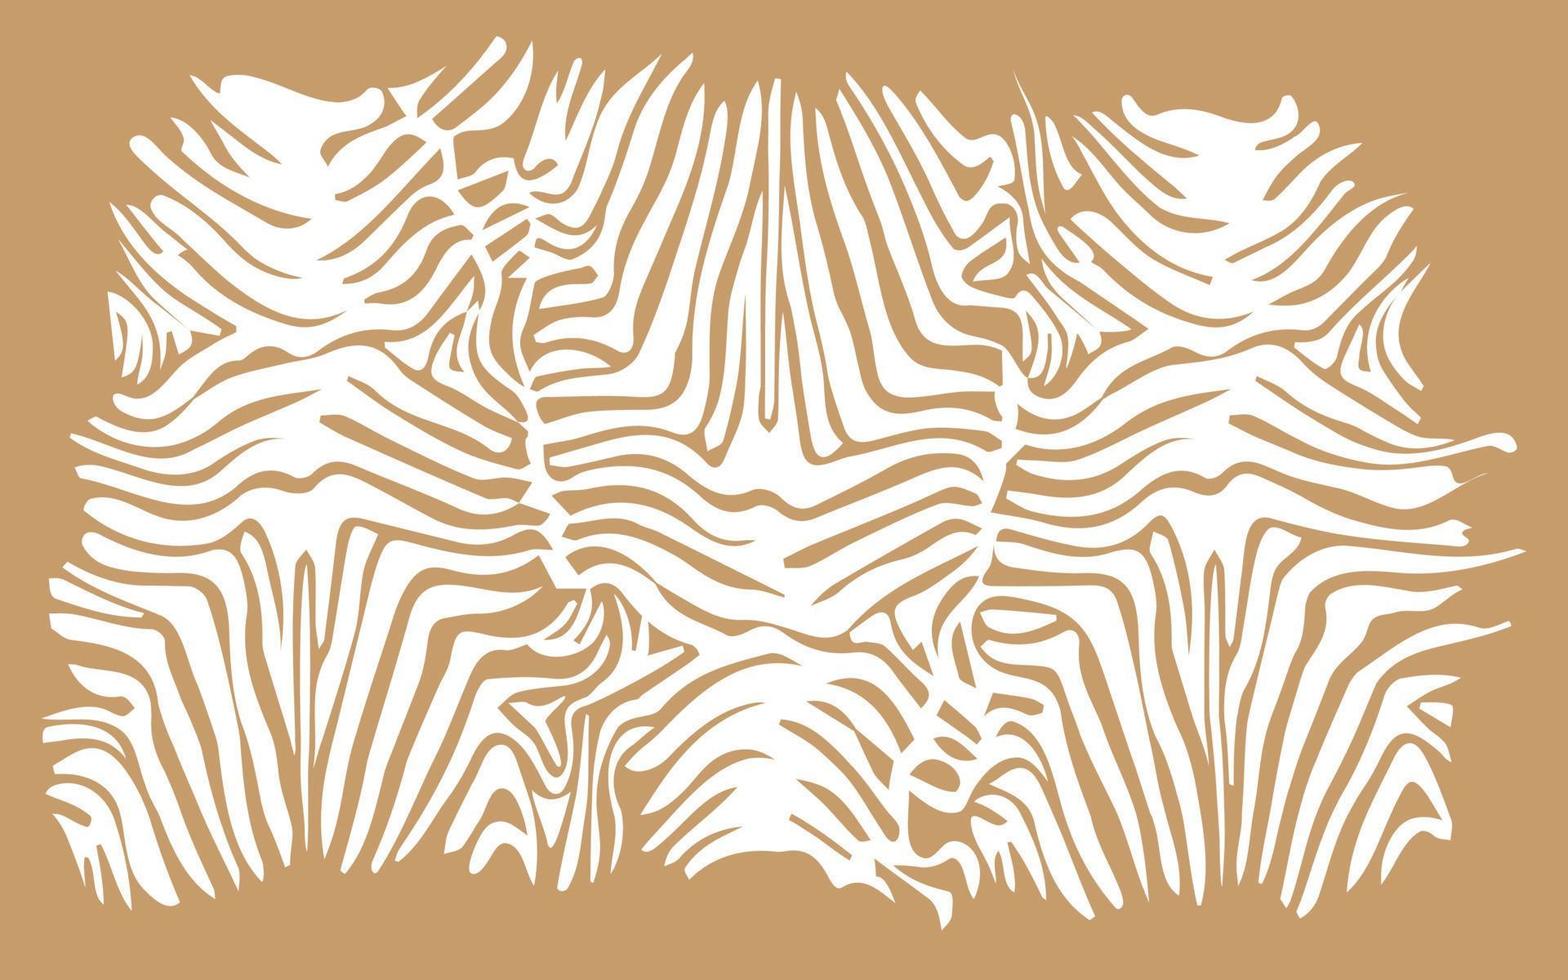 zebra hud abstrakt bakgrund afrikansk safari vektor mönster